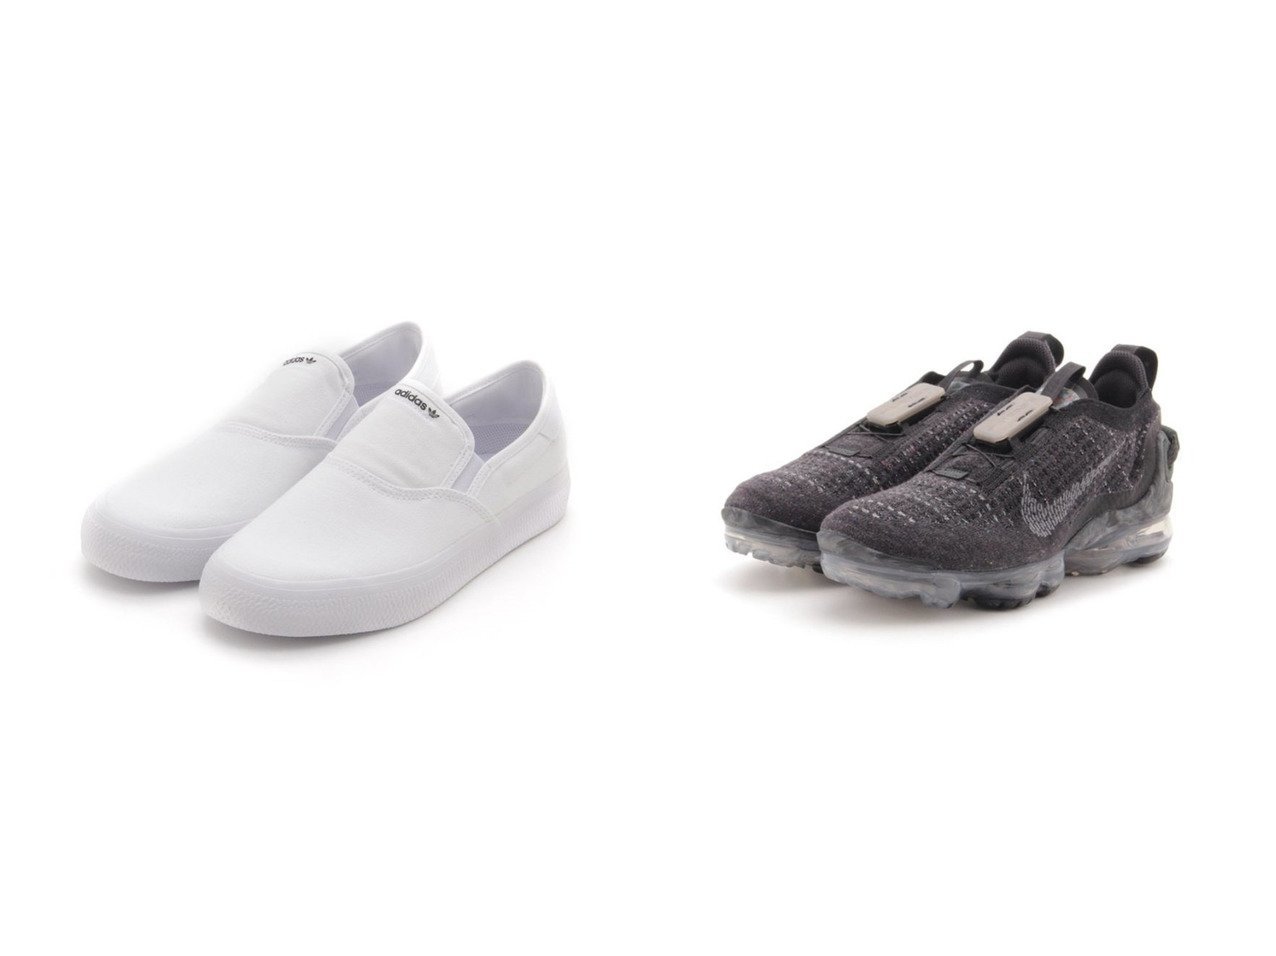 【emmi/エミ】の【adidas Originals】3MC SLIP&【NIKE】W AIR VAPORMAX 2020 FK シューズ・靴のおすすめ！人気、トレンド・レディースファッションの通販 おすすめで人気の流行・トレンド、ファッションの通販商品 メンズファッション・キッズファッション・インテリア・家具・レディースファッション・服の通販 founy(ファニー) https://founy.com/ ファッション Fashion レディースファッション WOMEN シューズ スニーカー スリッポン フィット レース シンプル |ID:crp329100000013431